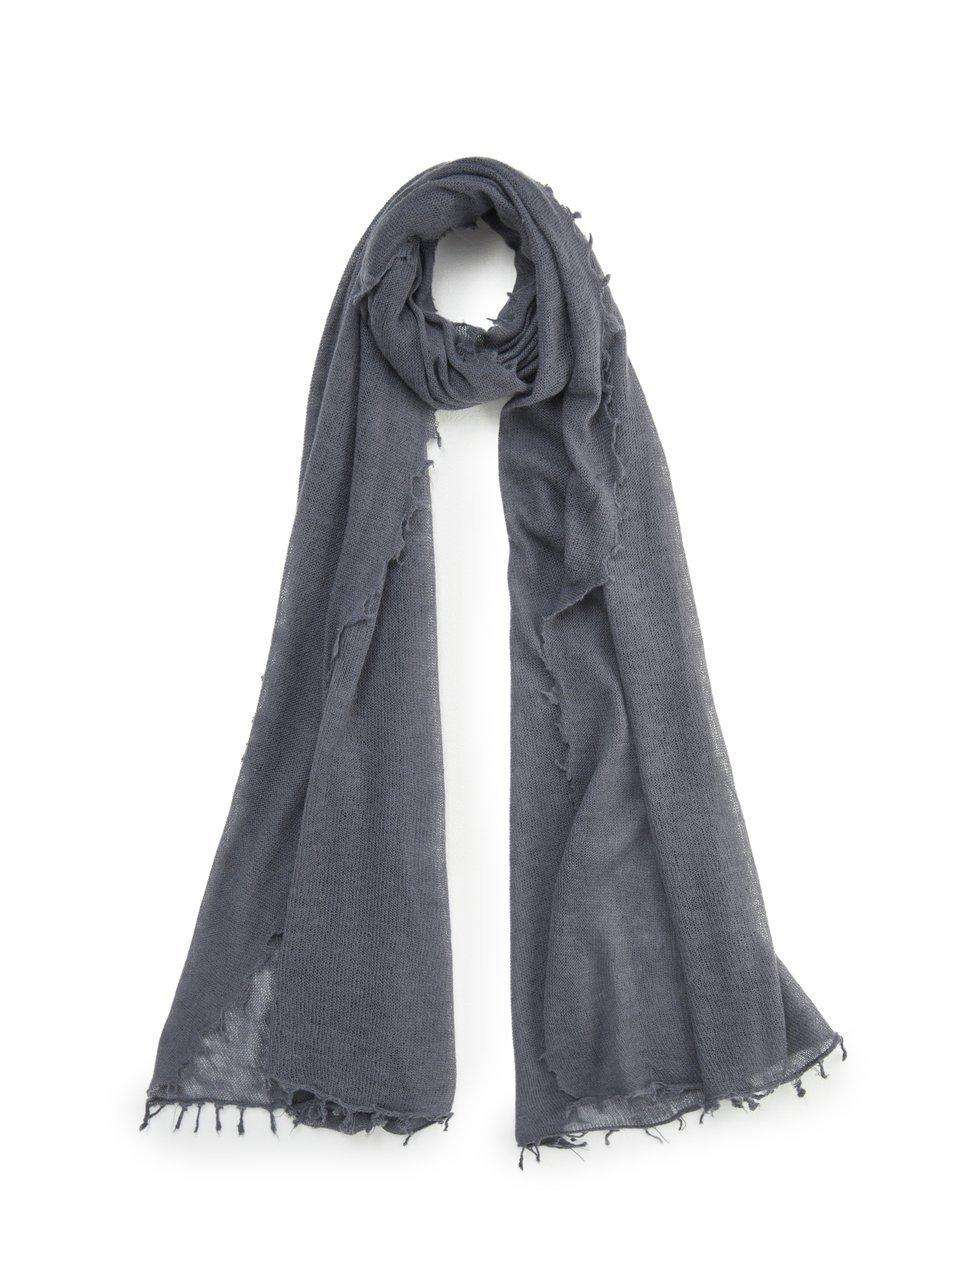 Вязаный шарф из 100% кашемира премиум-класса.